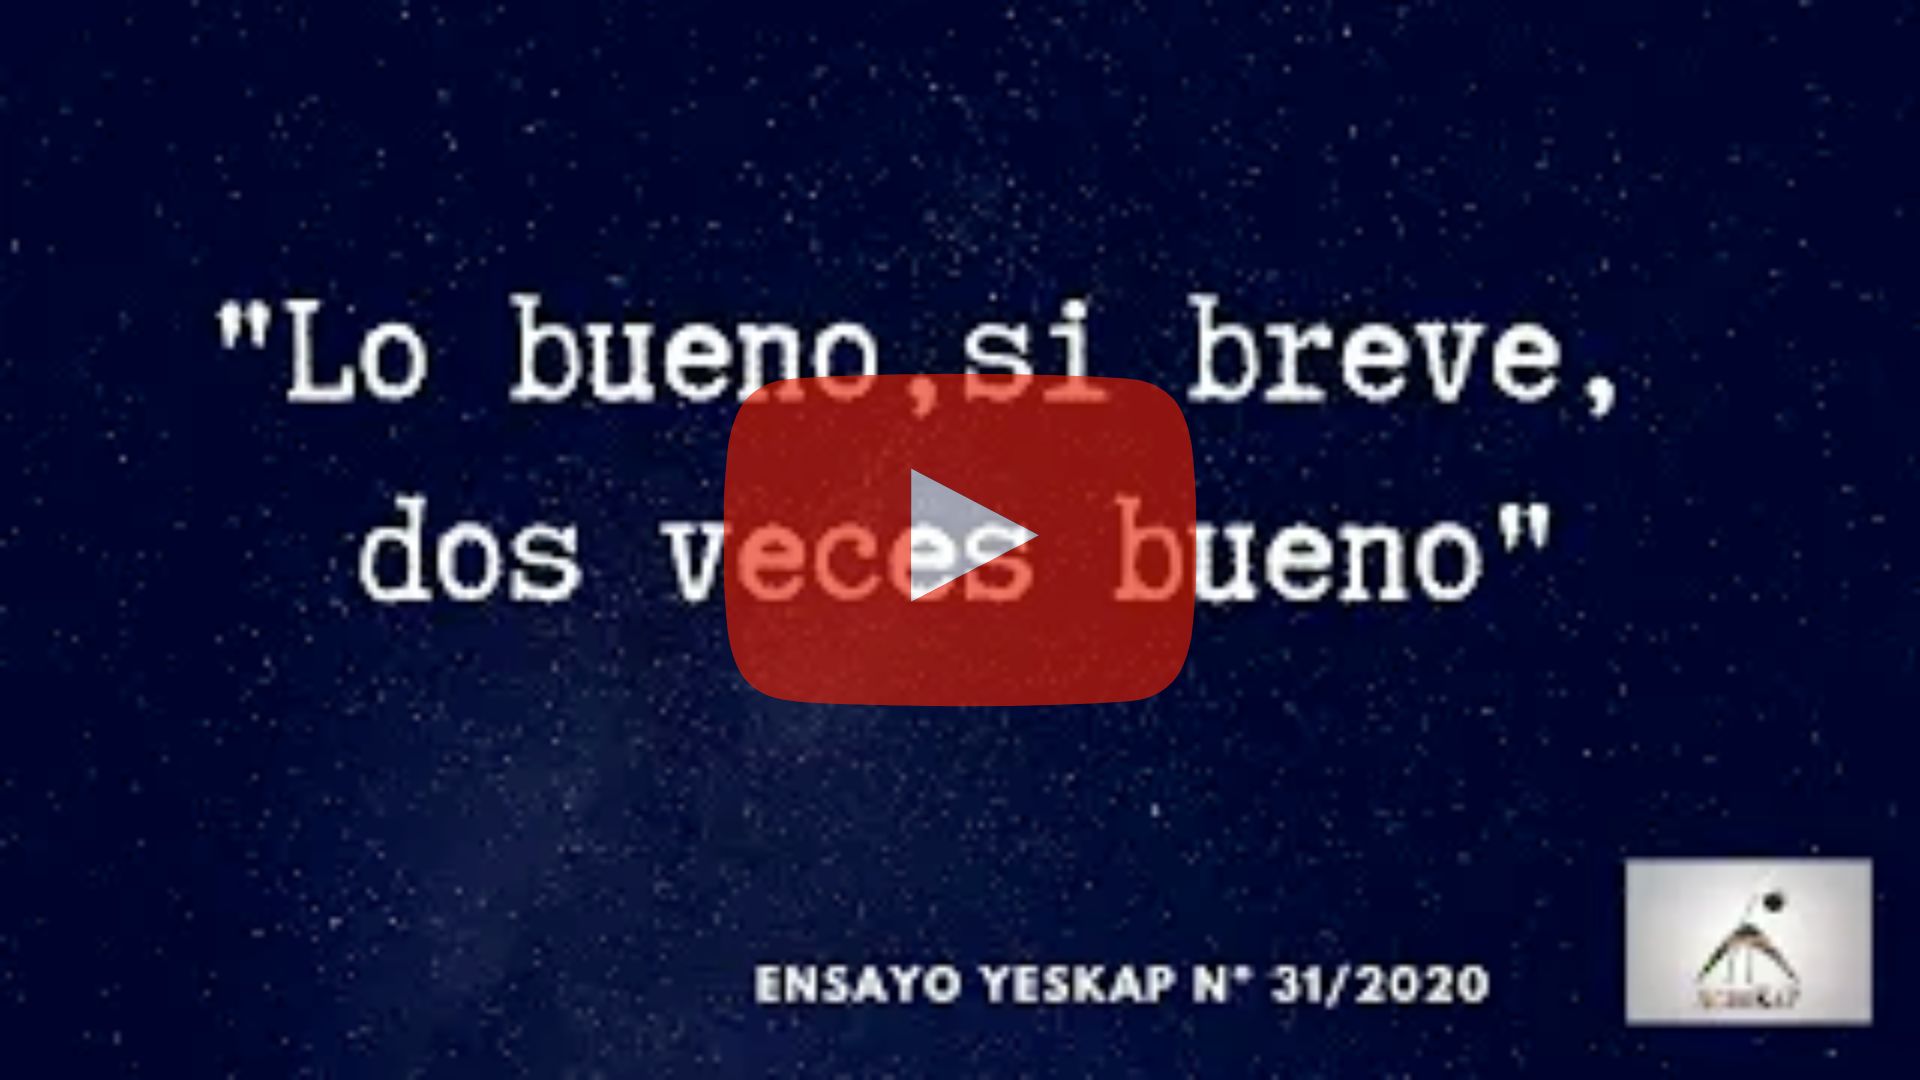 Ensayo 31/2020 YesKaP Villarrobledo será el objetivo de AgroKaP 2021 para realizar la mayoría de nuestros ensayos, y... Todo empieza aquí. Este vídeo puede tardar en cargar unos segundos, por favor, espere...